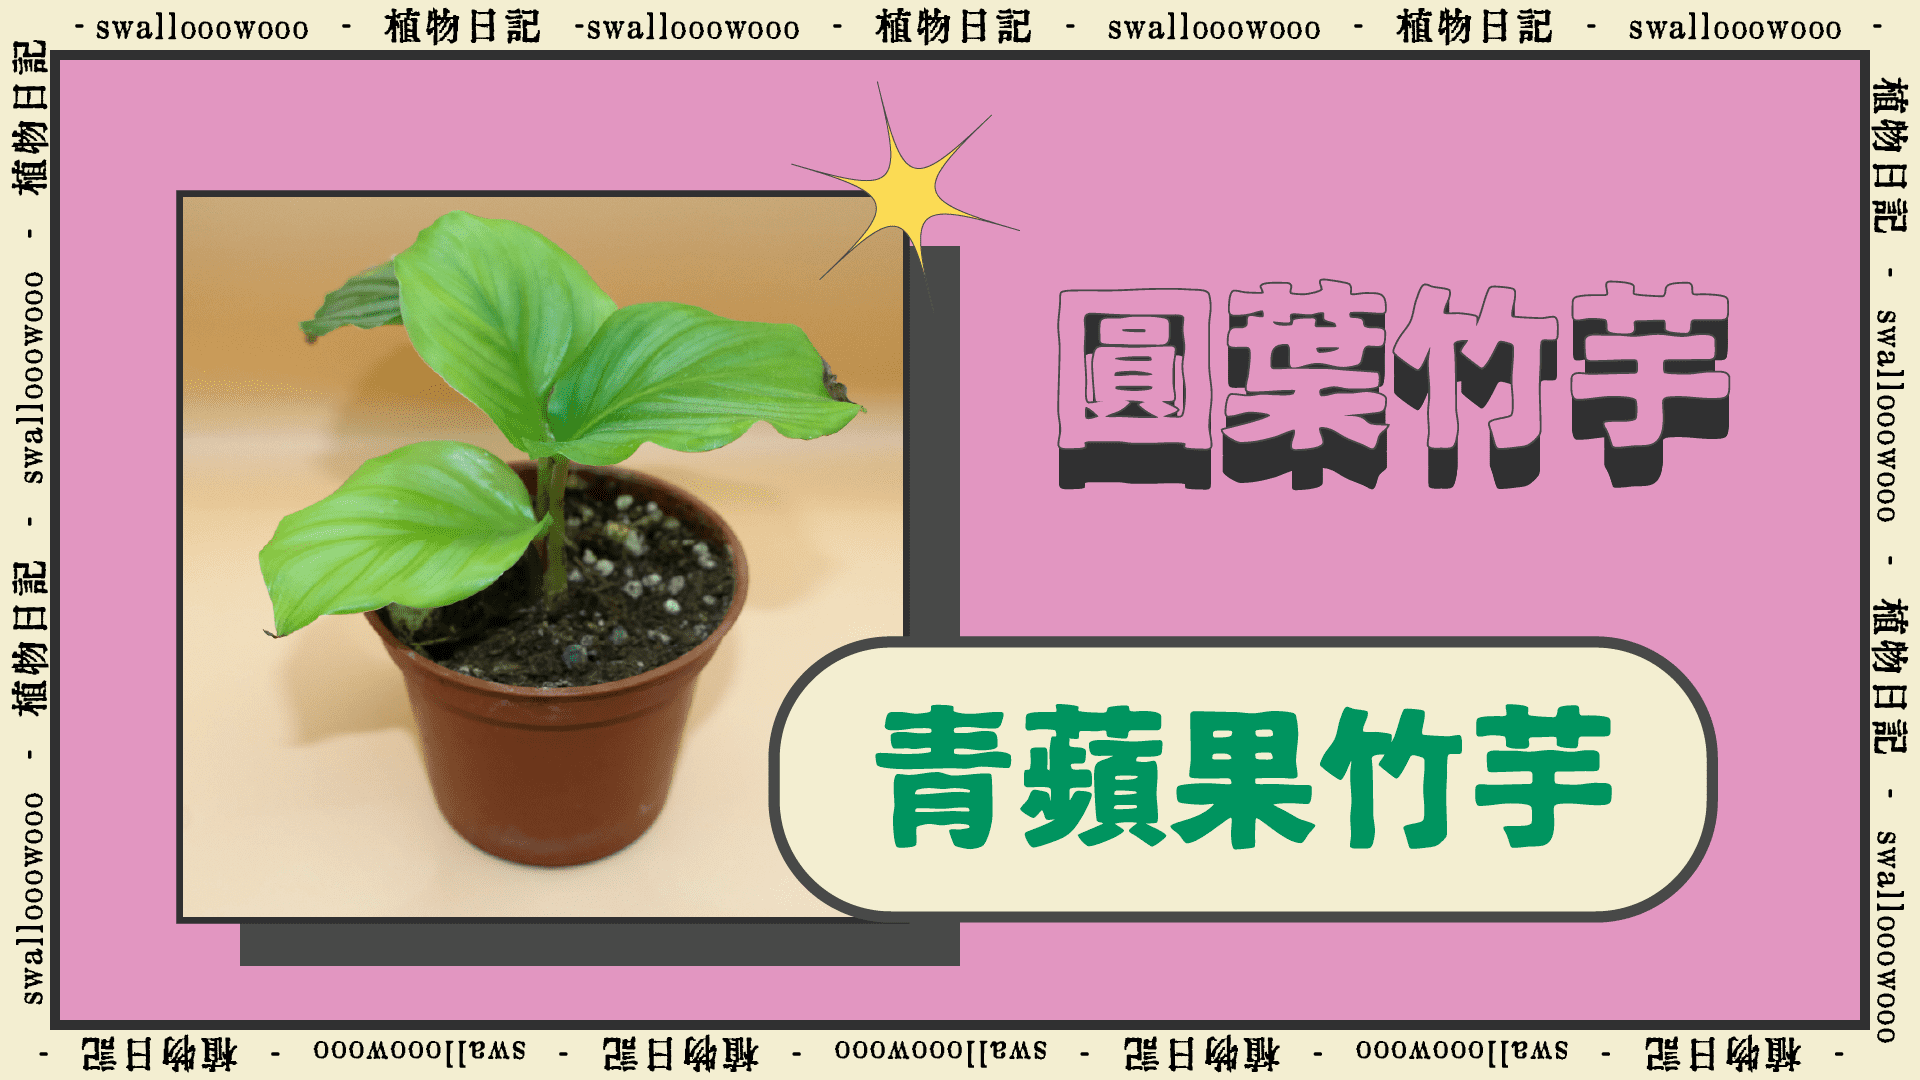 青蘋果竹芋 Calathea orbifolia-1920-1080-植物日記-swallooowooo